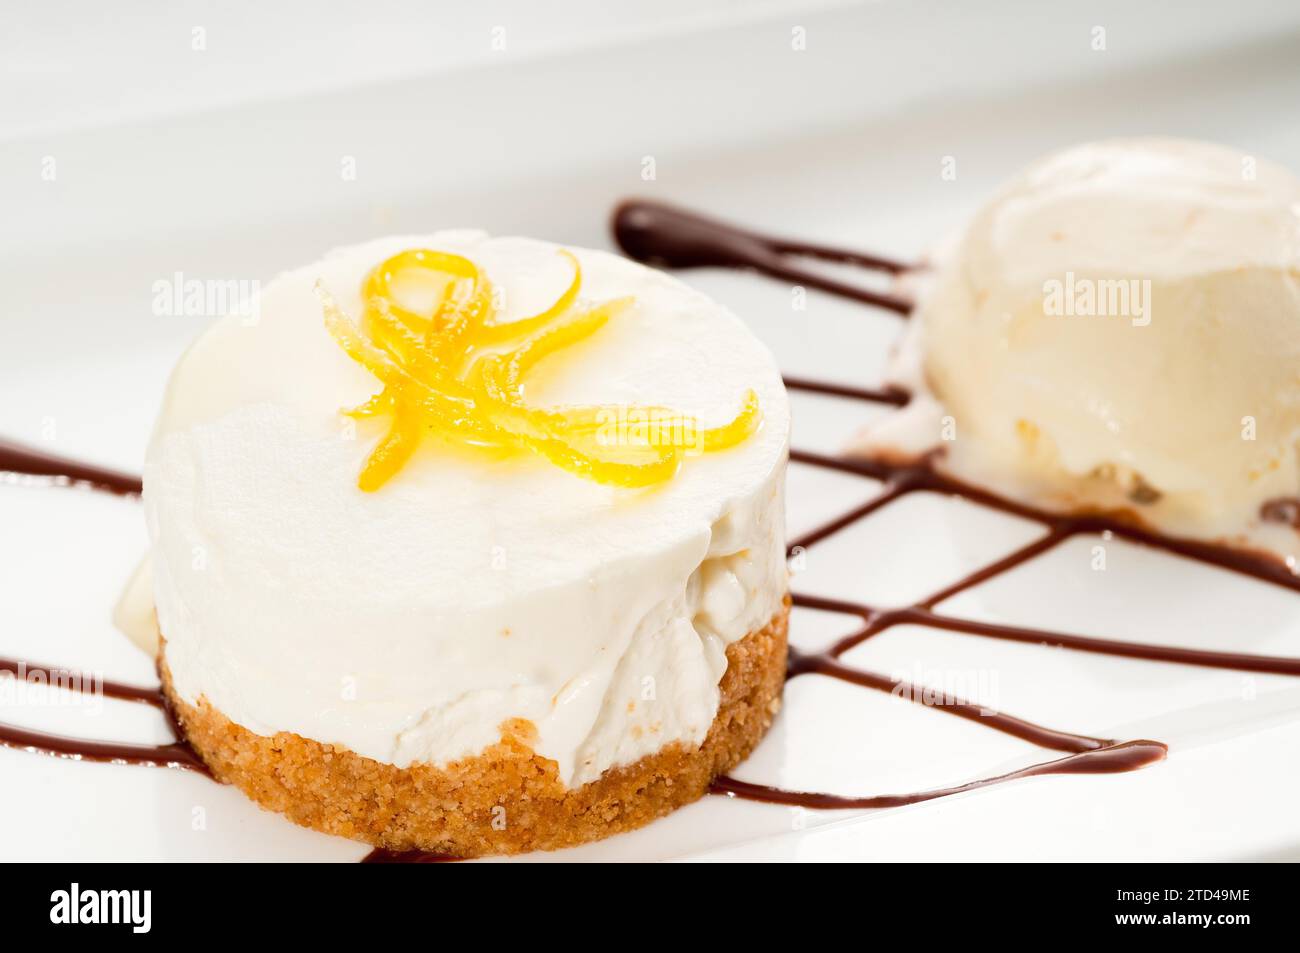 Dessert de mousse au citron très élégant servi avec zeste de citron sur le dessus et crème glacée à la vanille sur le côté, NOURRITURE PLUS DÉLICIEUSE SUR LE PORTFOLIO, photographie alimentaire Banque D'Images